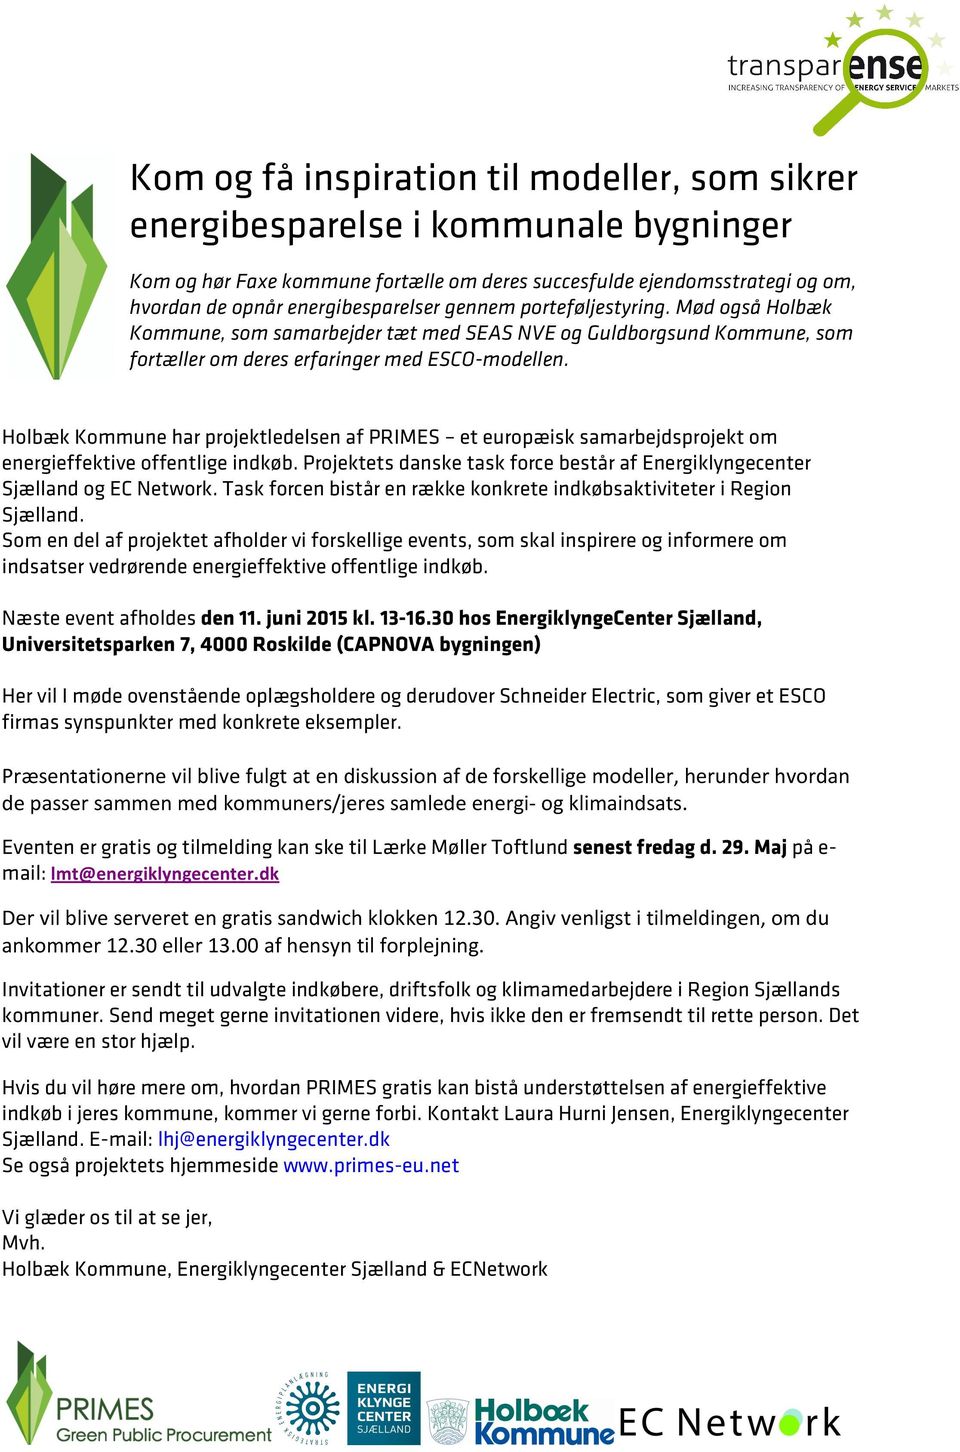 Holbæk Kommune har projektledelsen af PRIMES et europæisk samarbejdsprojekt om energieffektive offentlige indkøb. Projektets danske task force består af Energiklyngecenter Sjælland og EC Network.